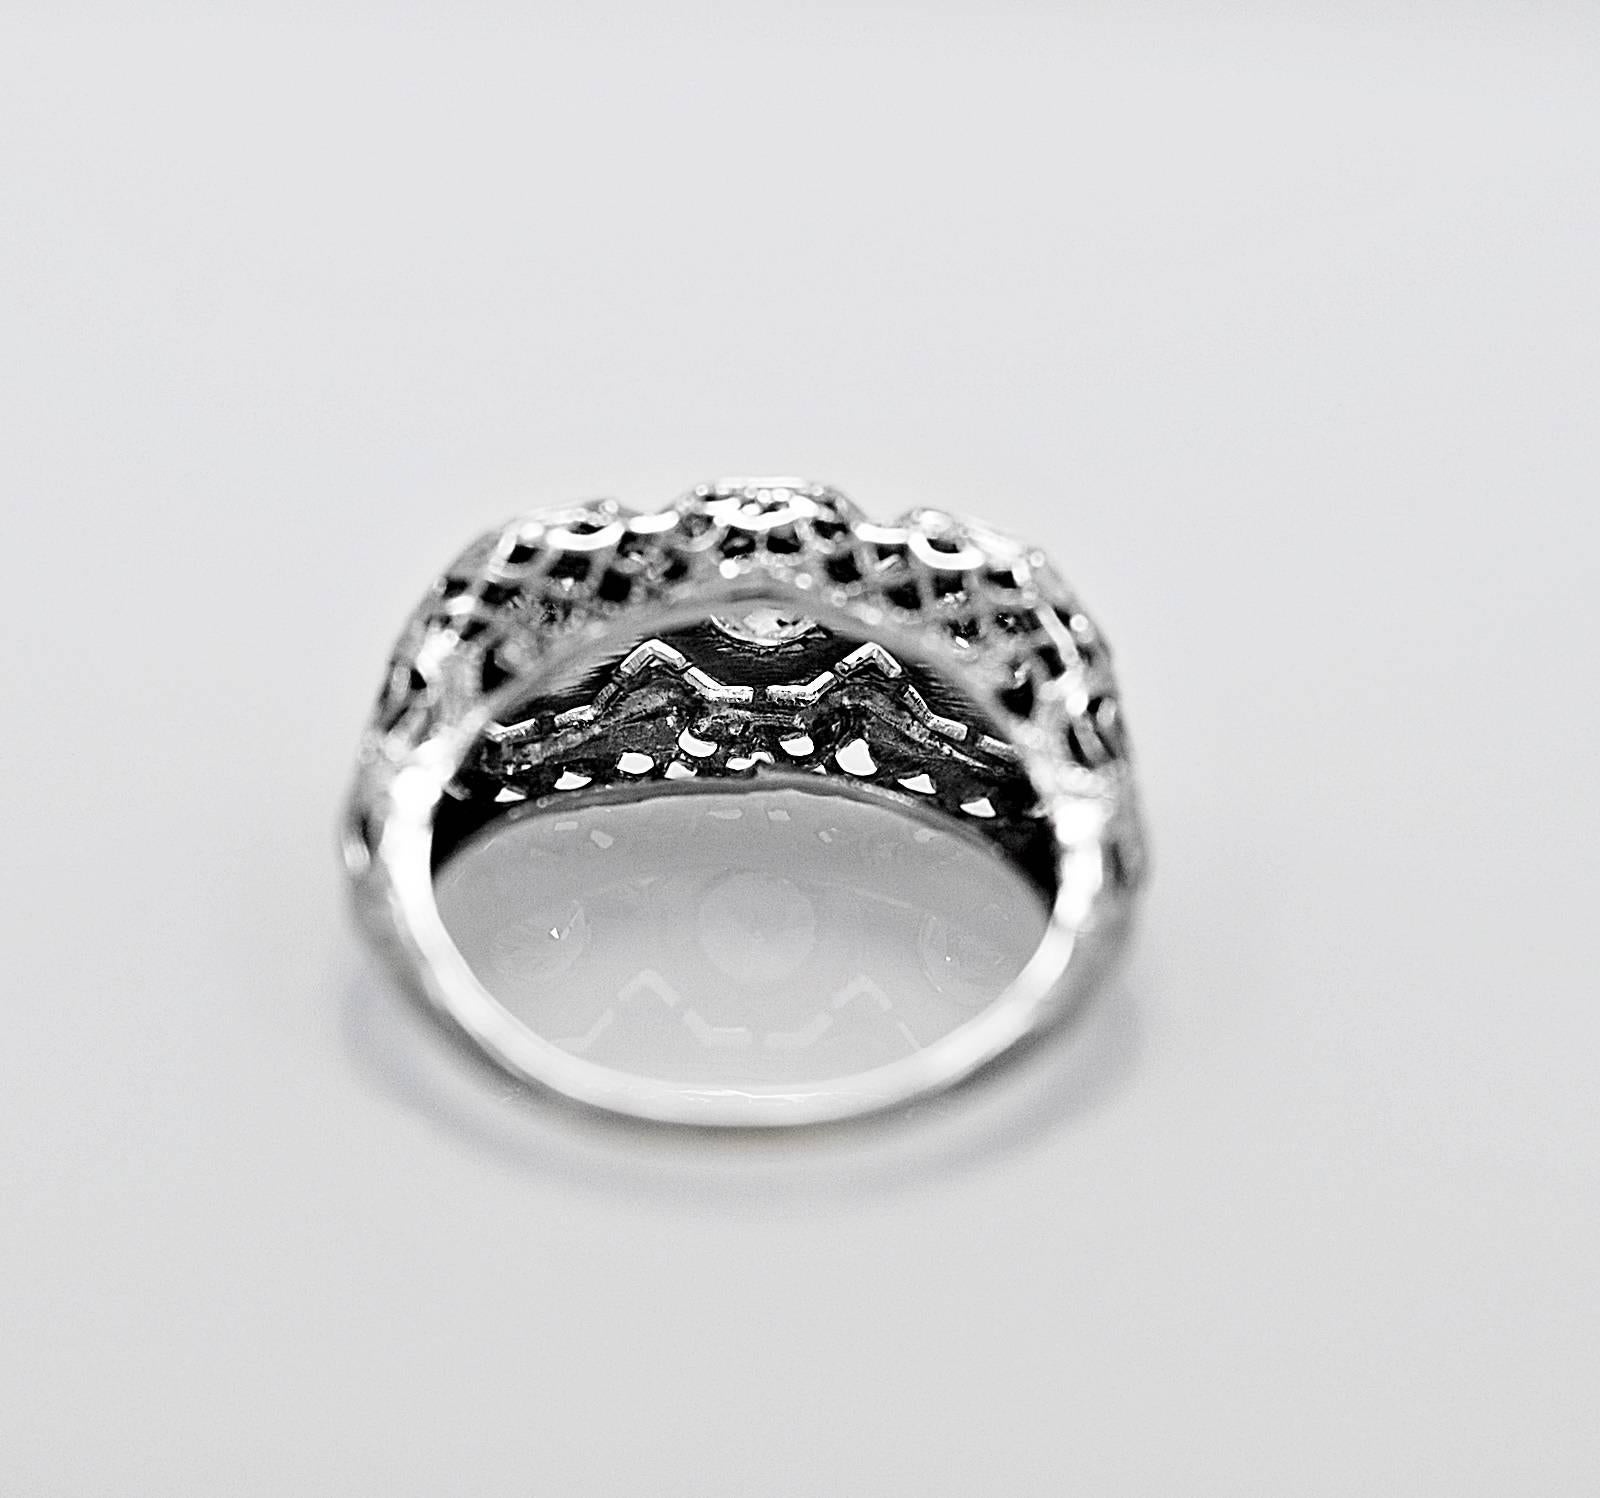 65 carat ring